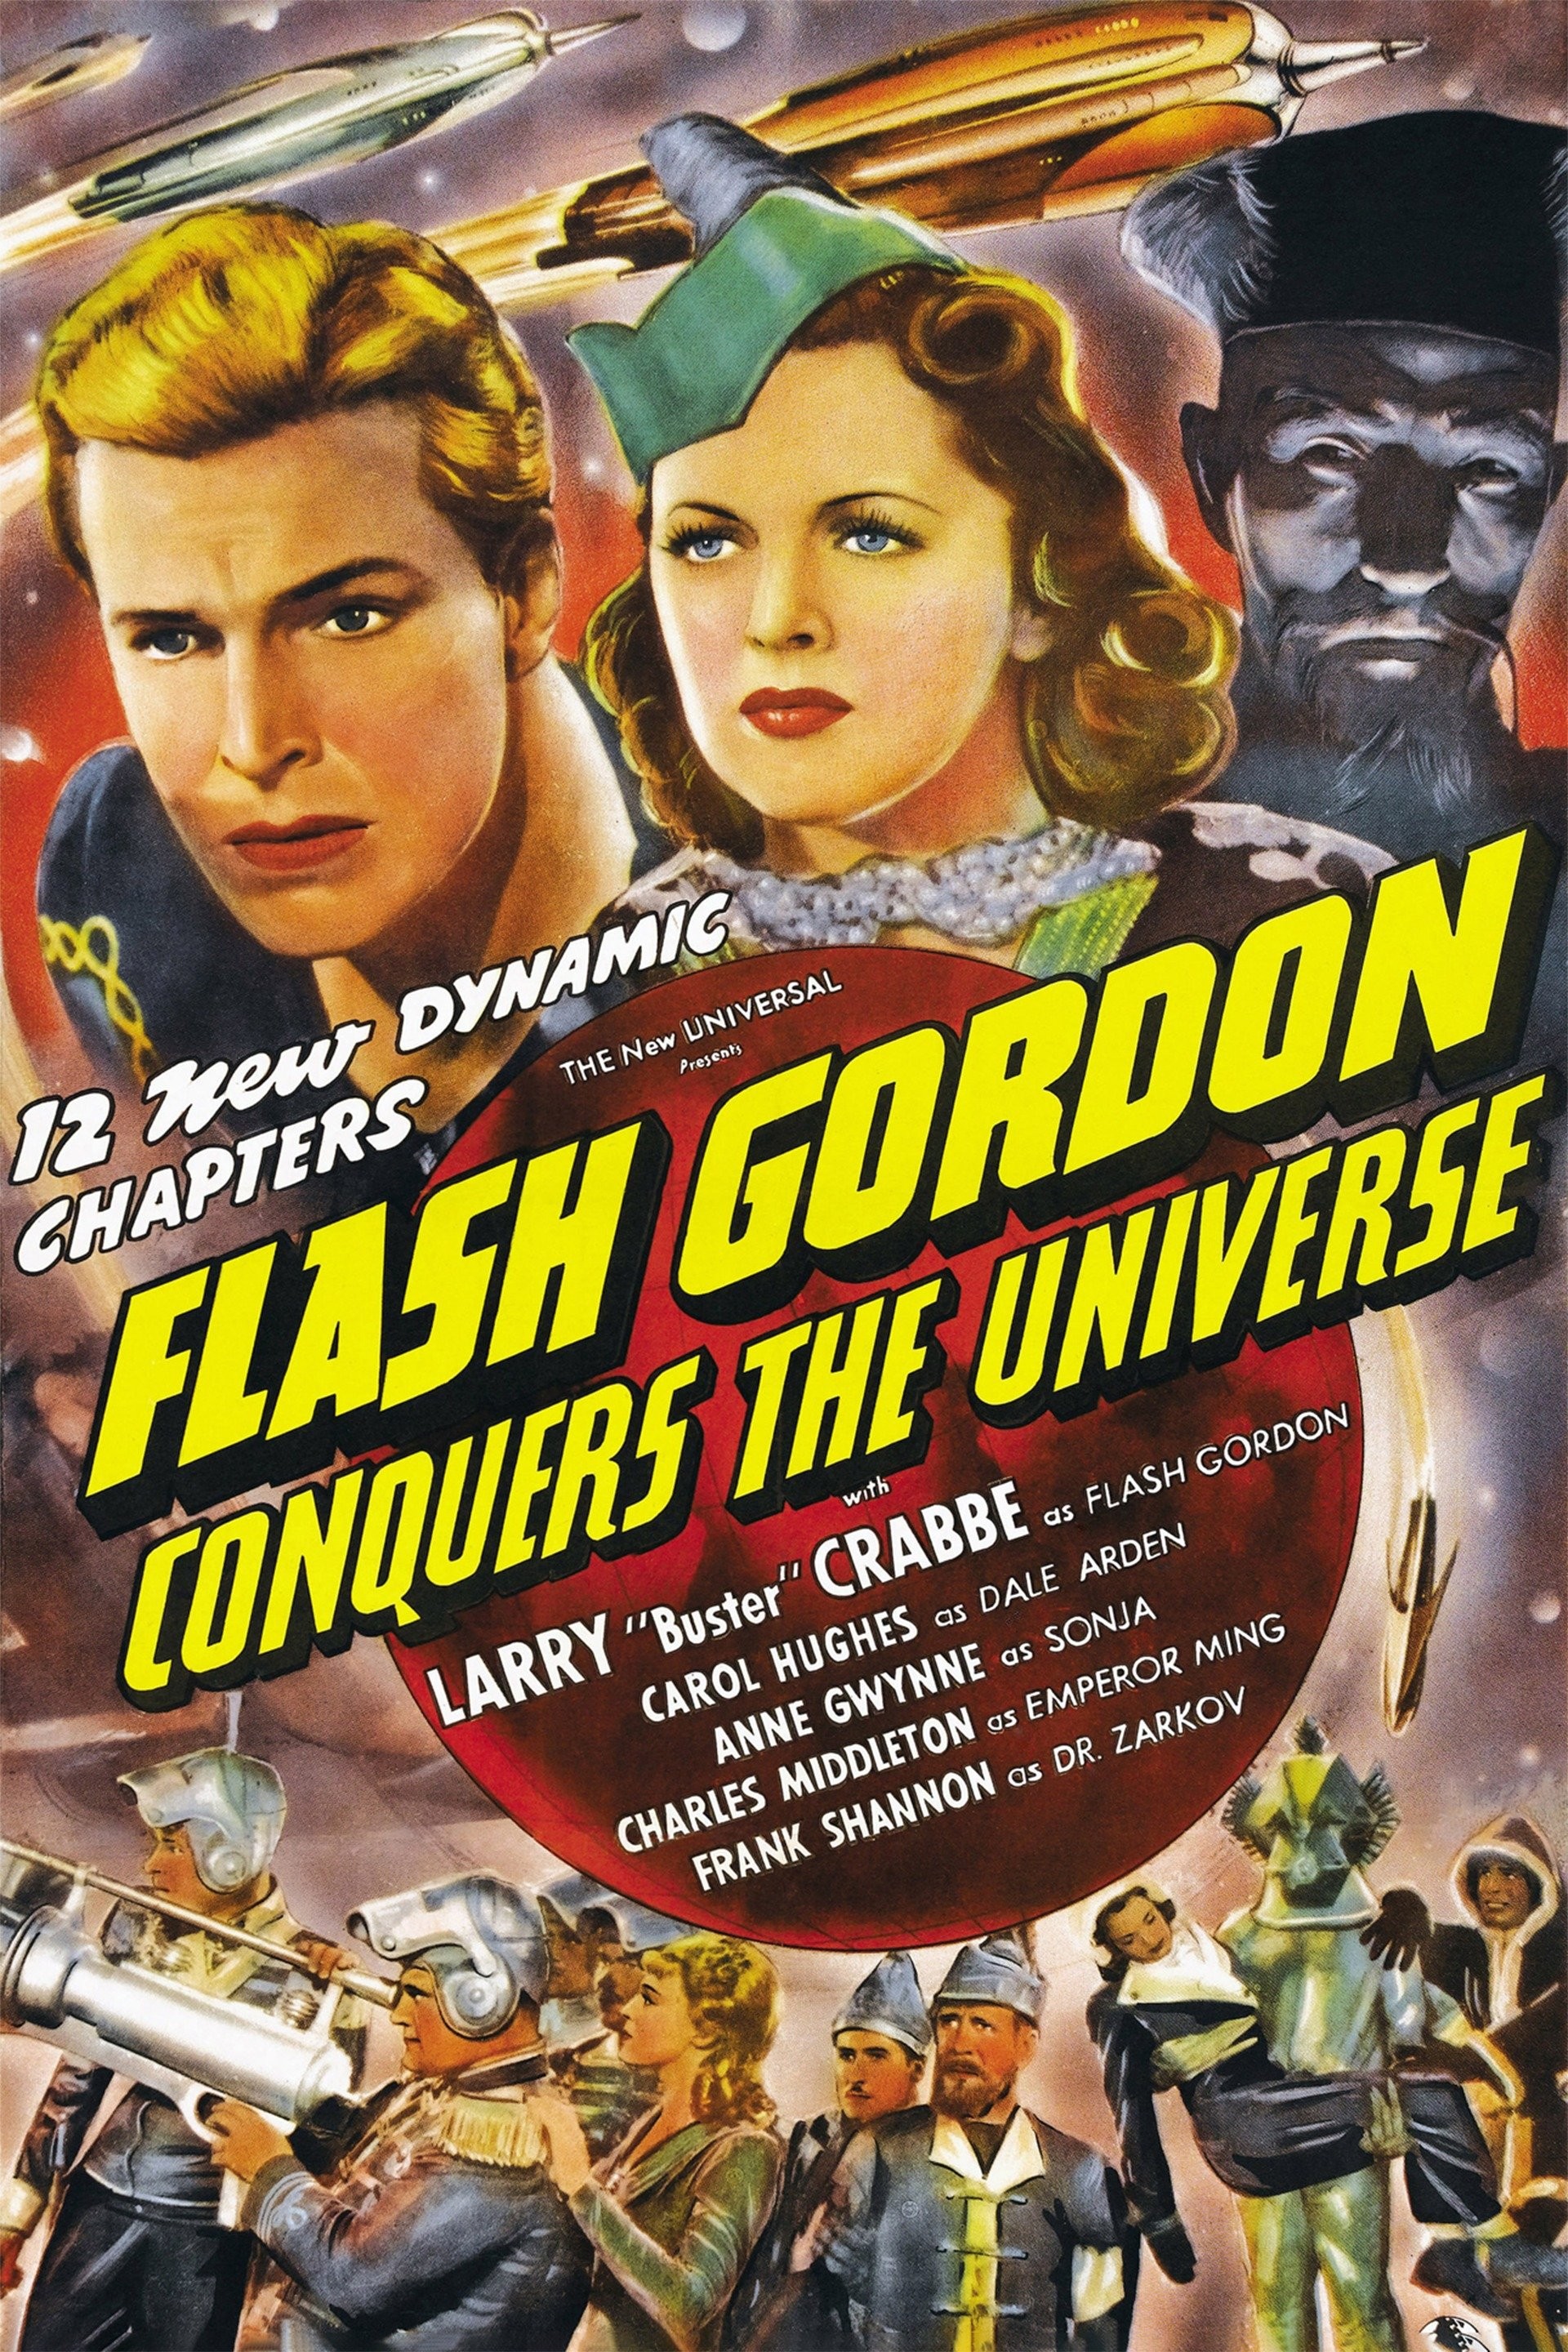 Flash Gordon' Movie Facts